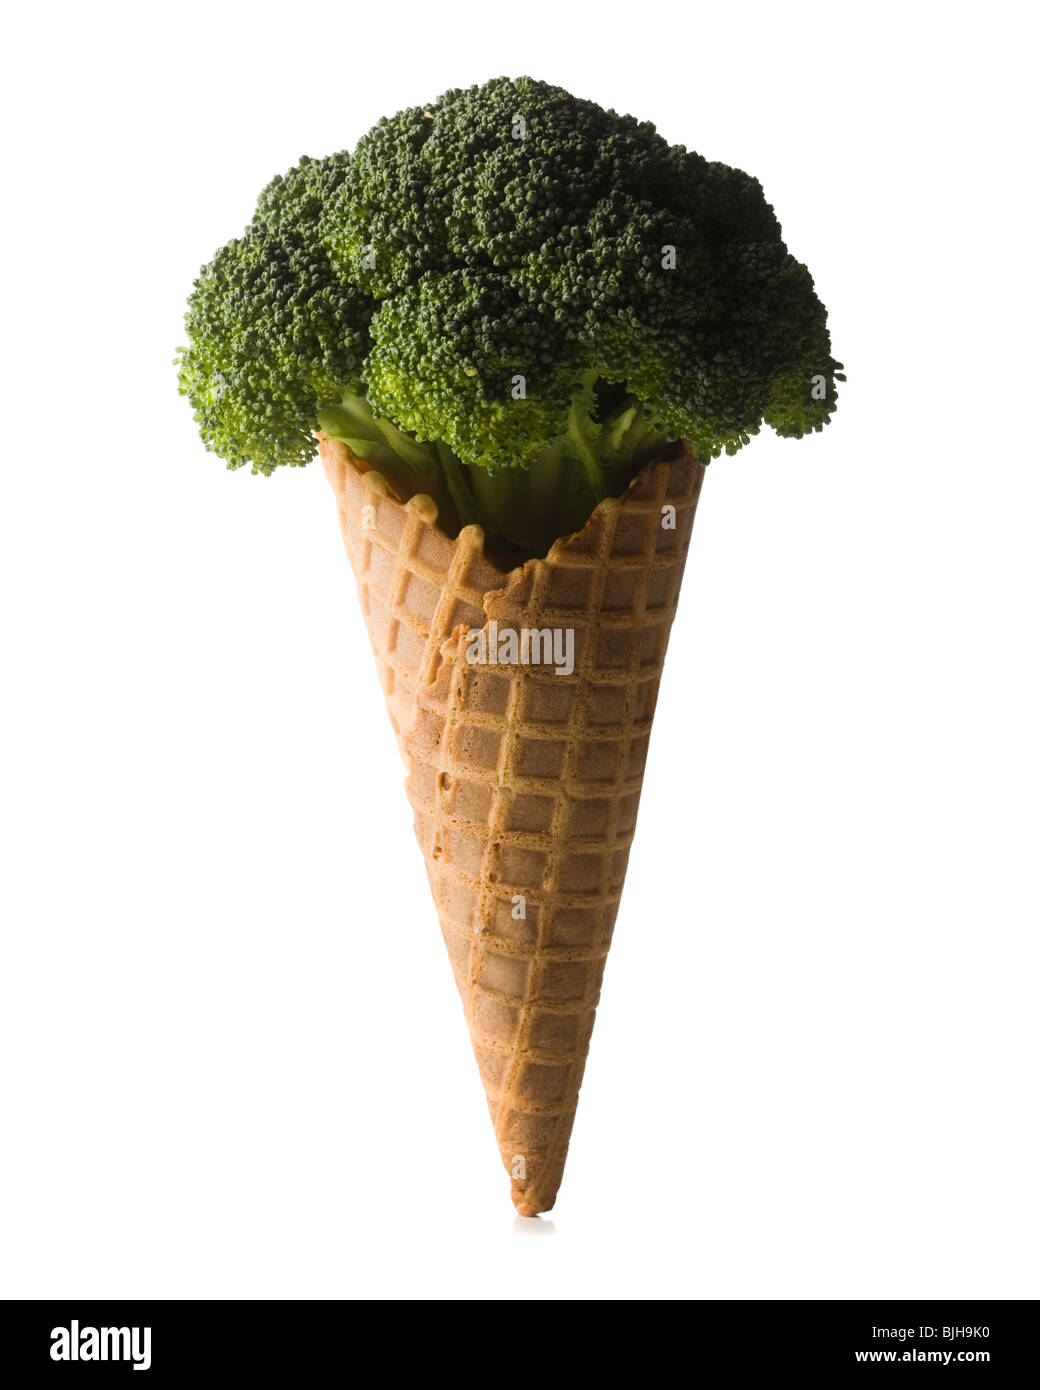 Le brocoli dans une gaufre ice cream cone Banque D'Images